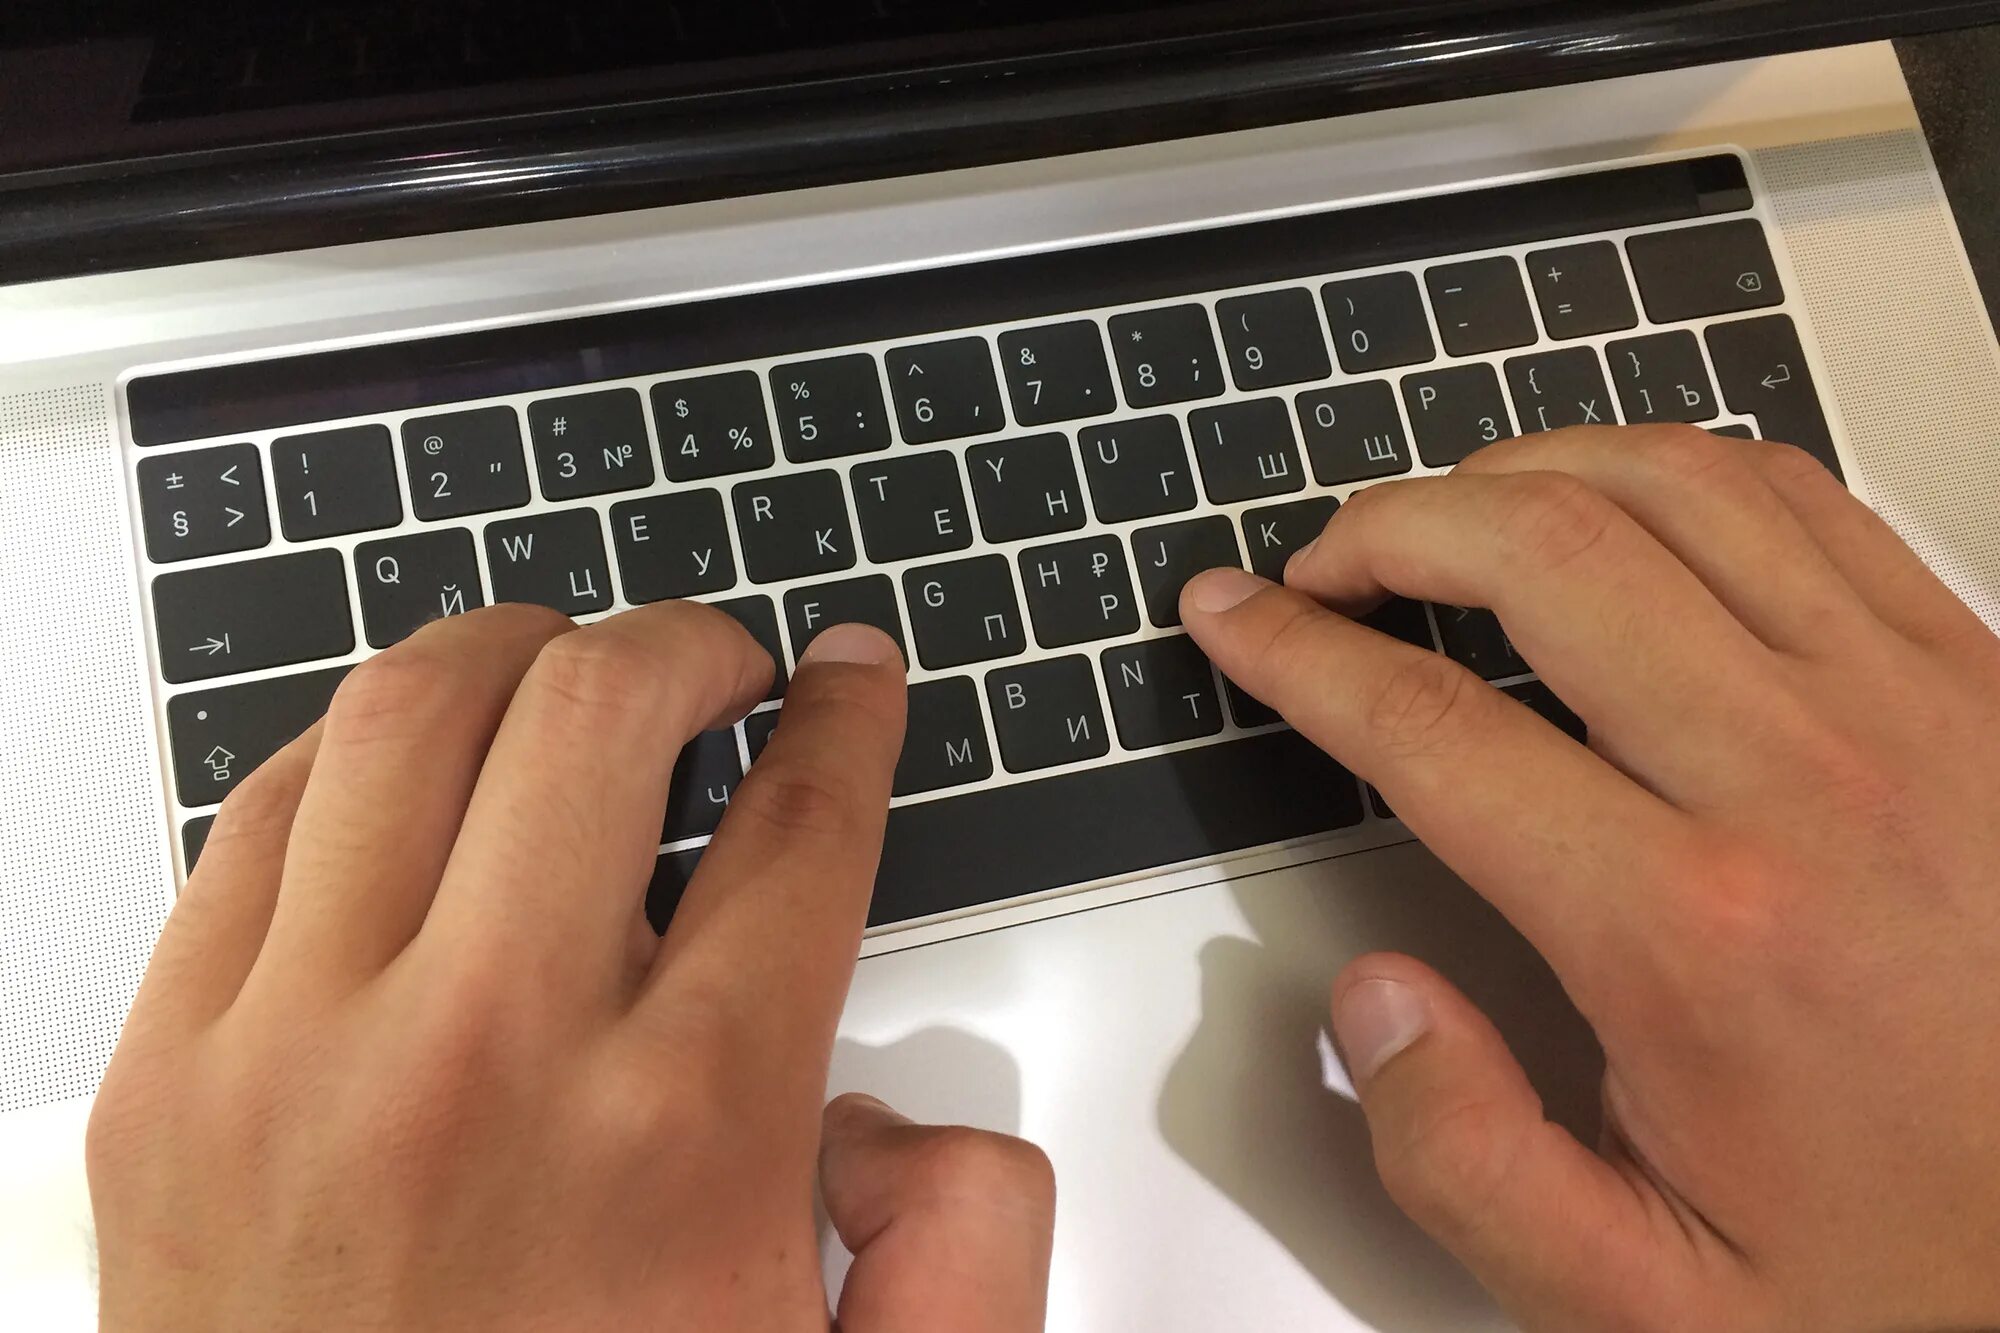 Показ нажатых клавиш. Пальцы на клавиатуре. Клавиатура. Компьютерная клавиатура. Клавиатура компьютера пальцы.